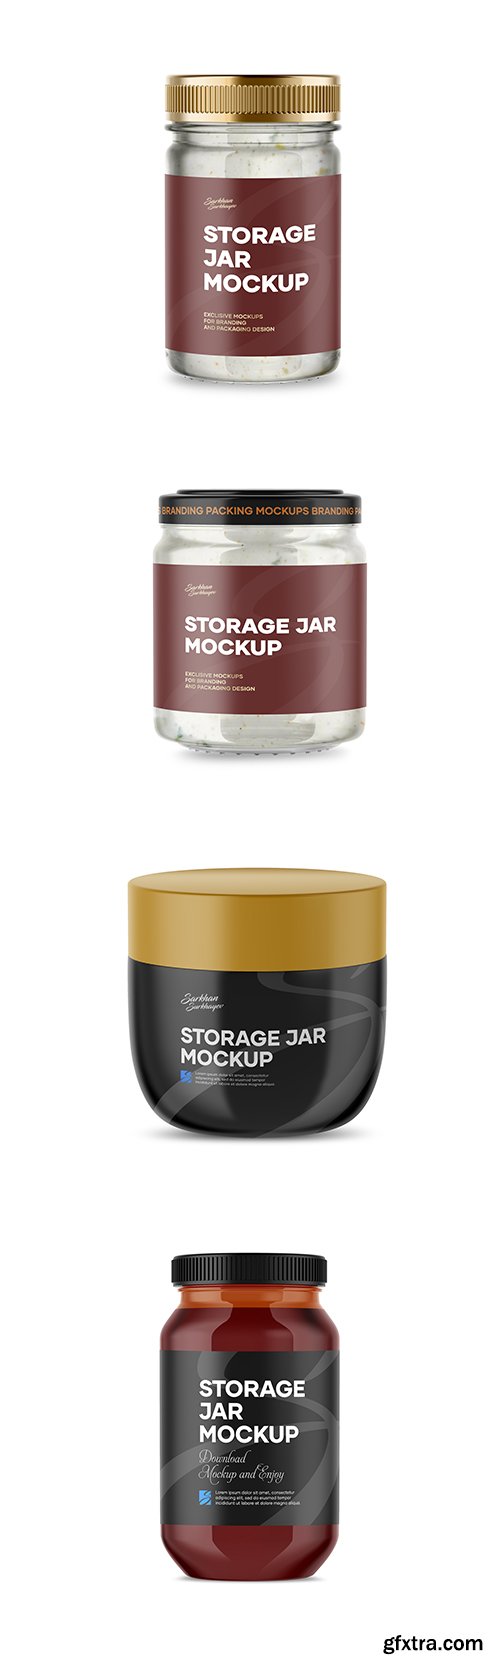 Storage Jar Mockup PSD Template